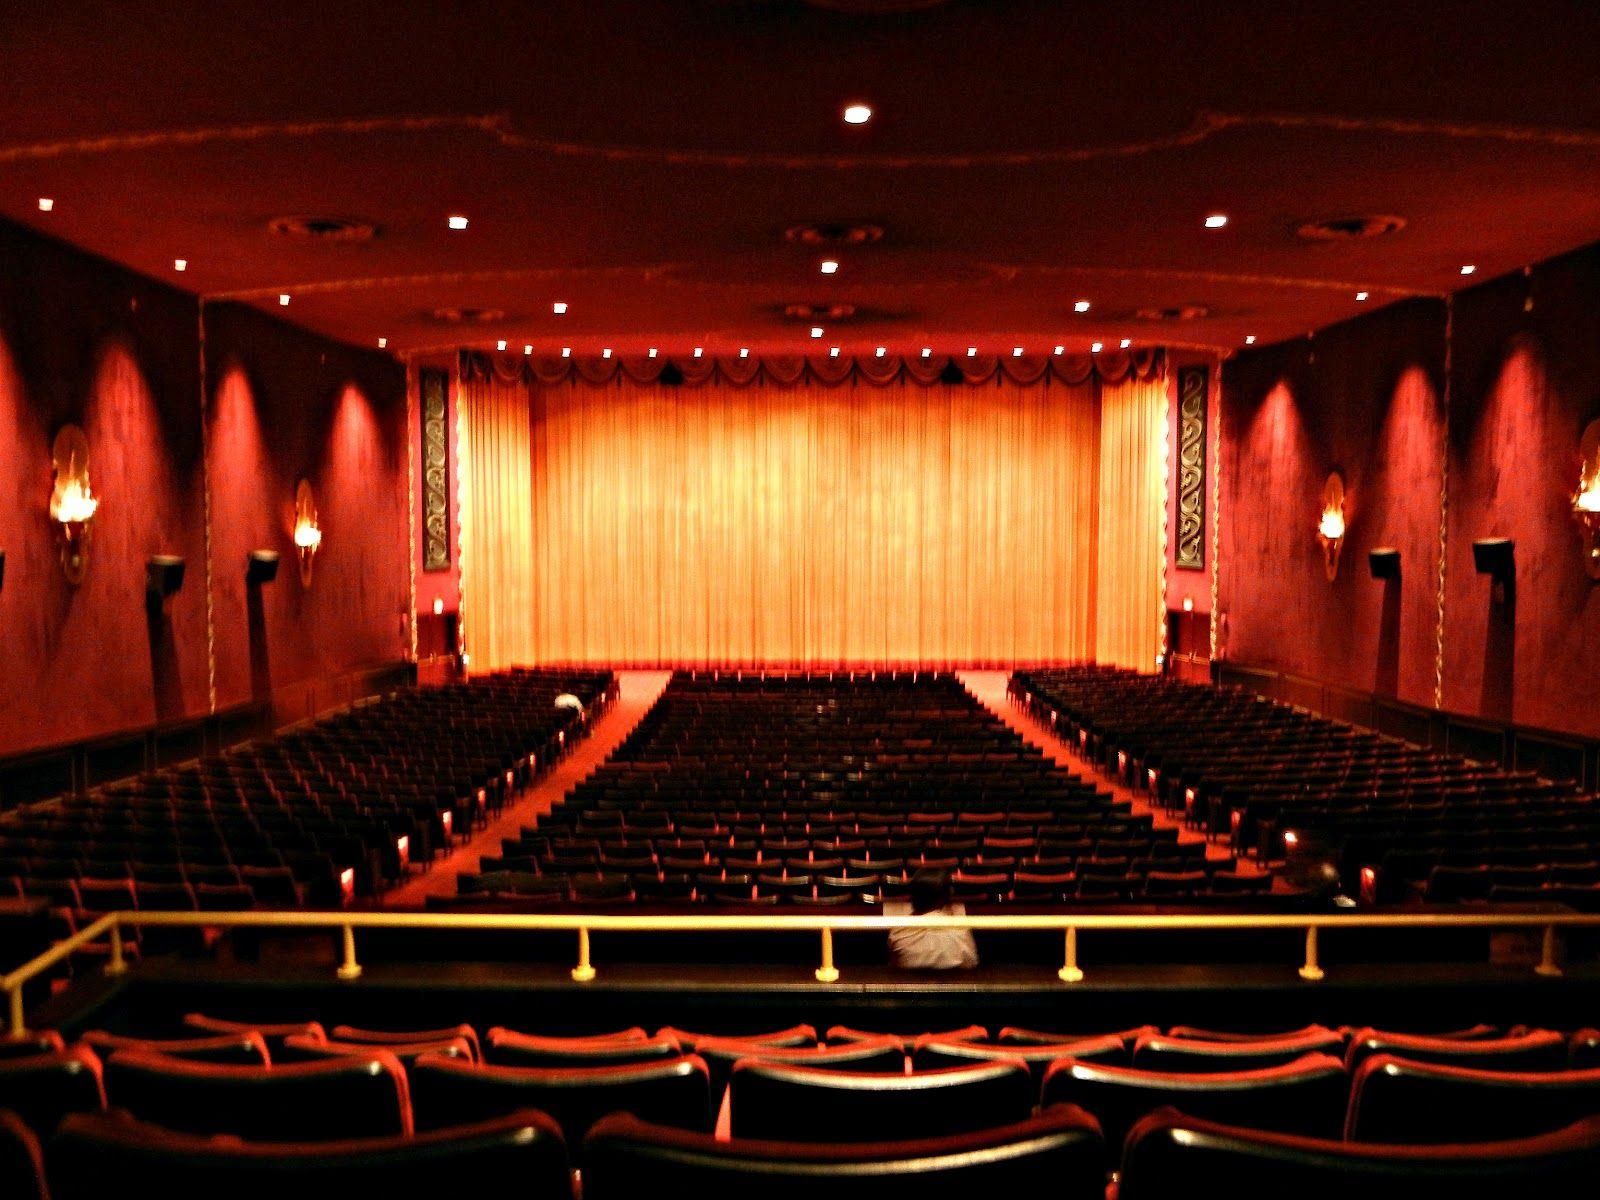 تصویر زمینه از نمای کامل سالن تئاتر برای پس زمینه کامپیوتر